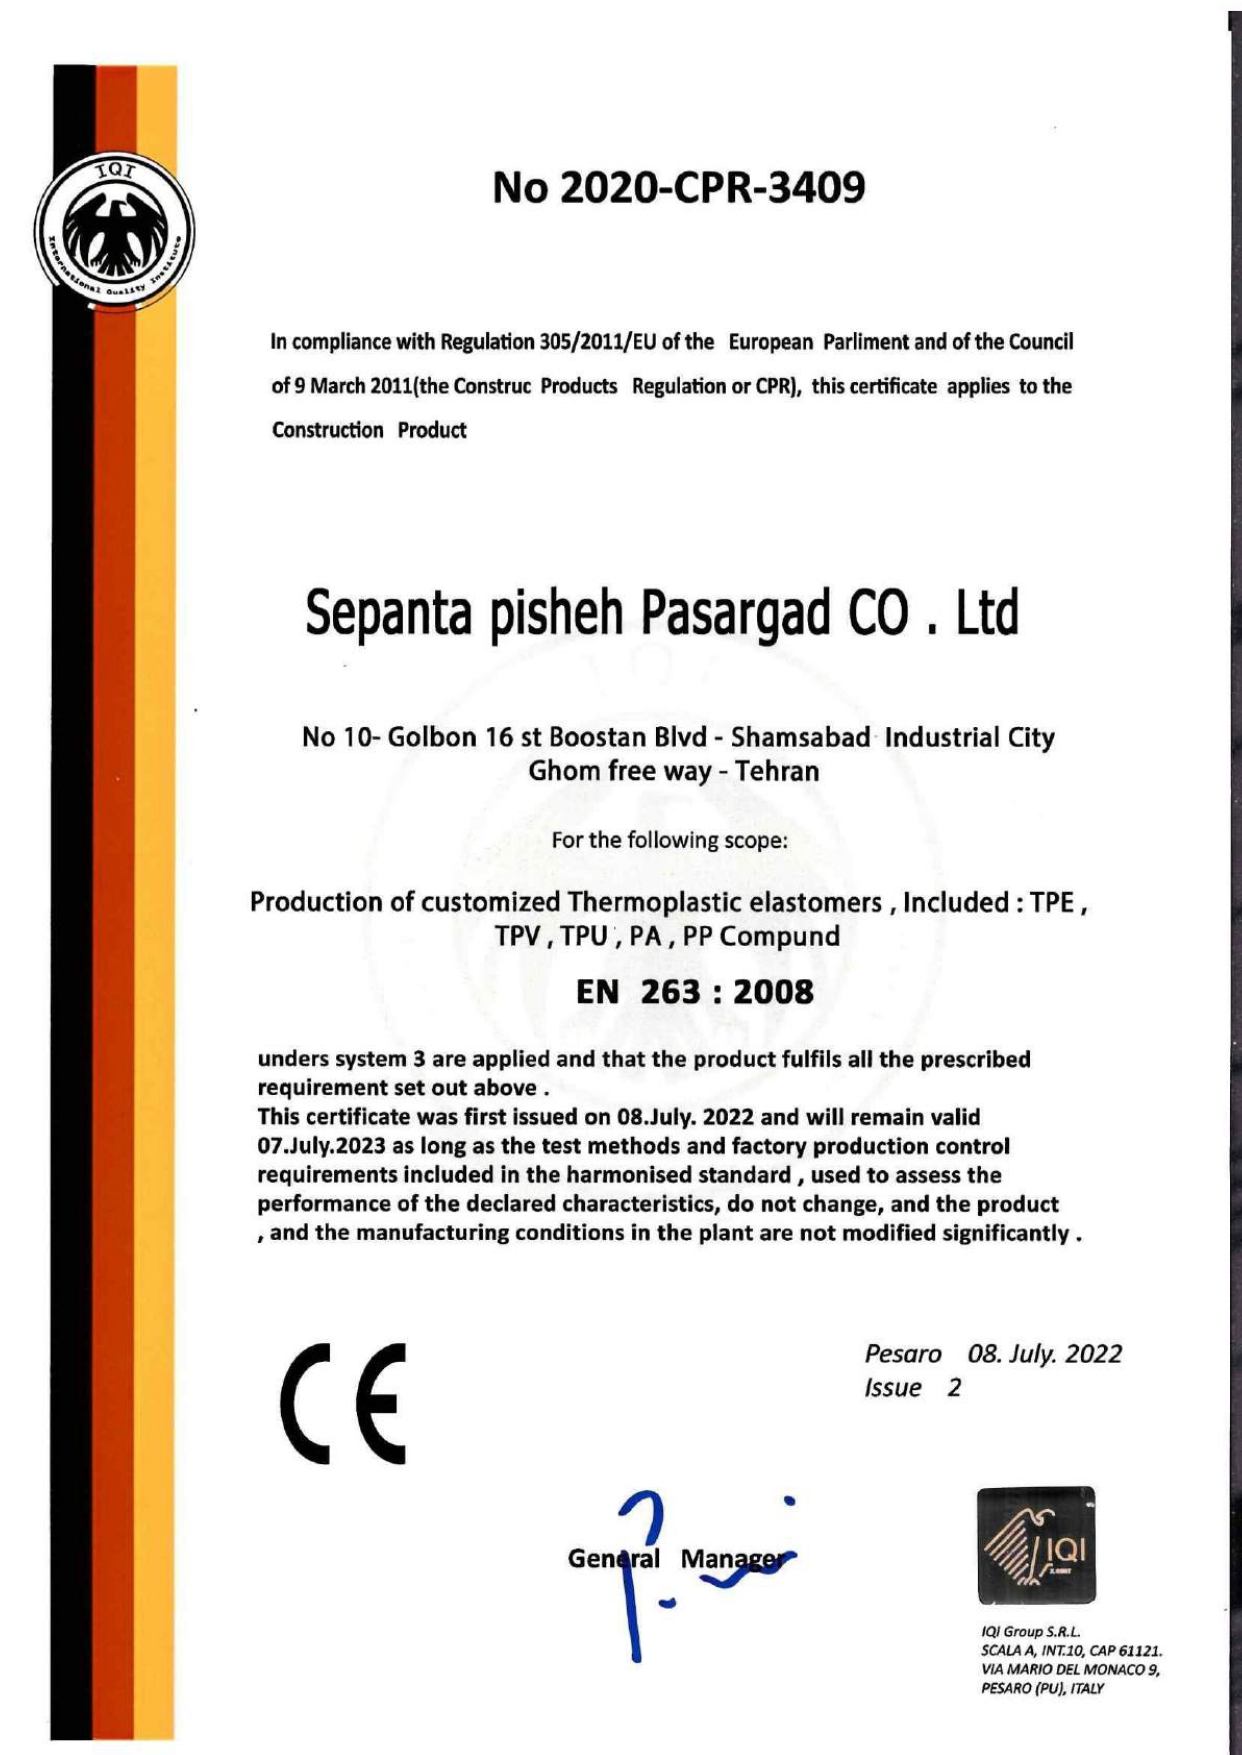 Image of sepanta pisheh pasargad certificates